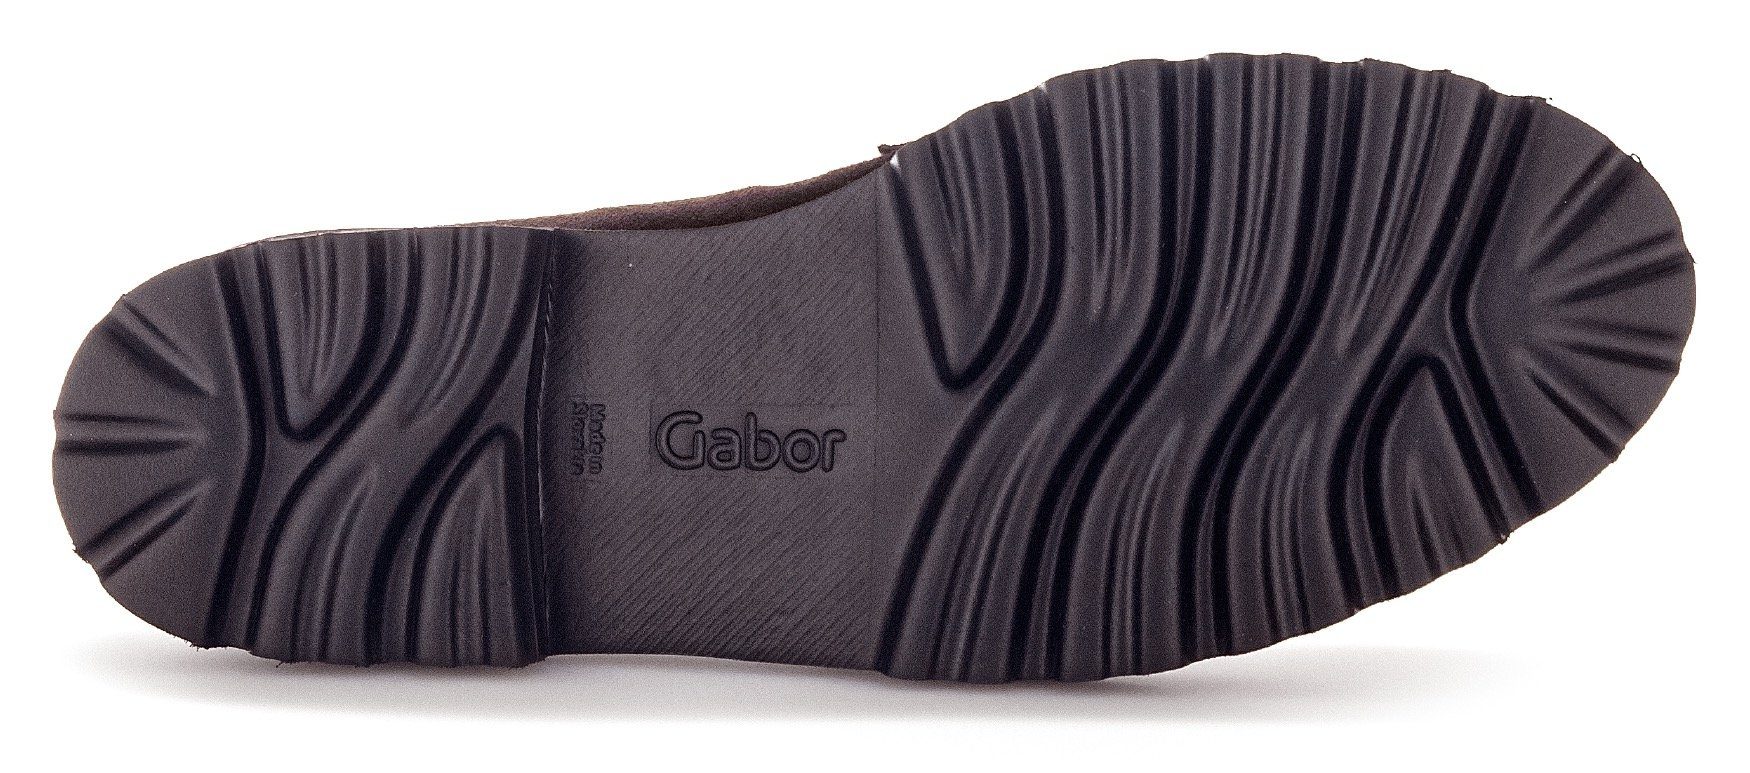 Best dunkelbraun-schwarz mit Gabor Slipper Fitting-Ausstattung